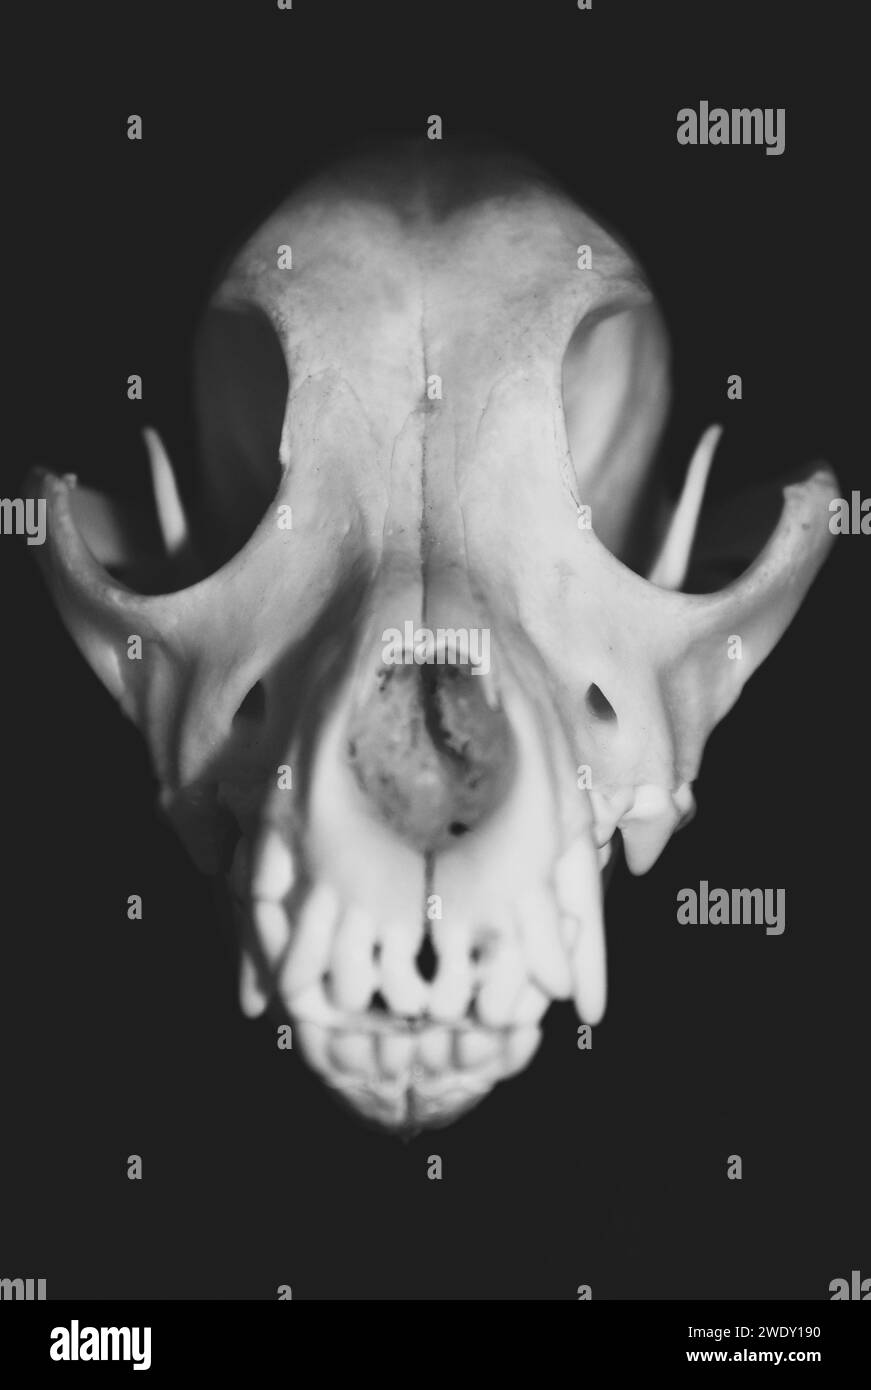 Primo piano sul cranio di un cane, visto dalla parte anteriore. Fotografia in bianco e nero. Campione del museo Canis lupus familiaris. Foto Stock